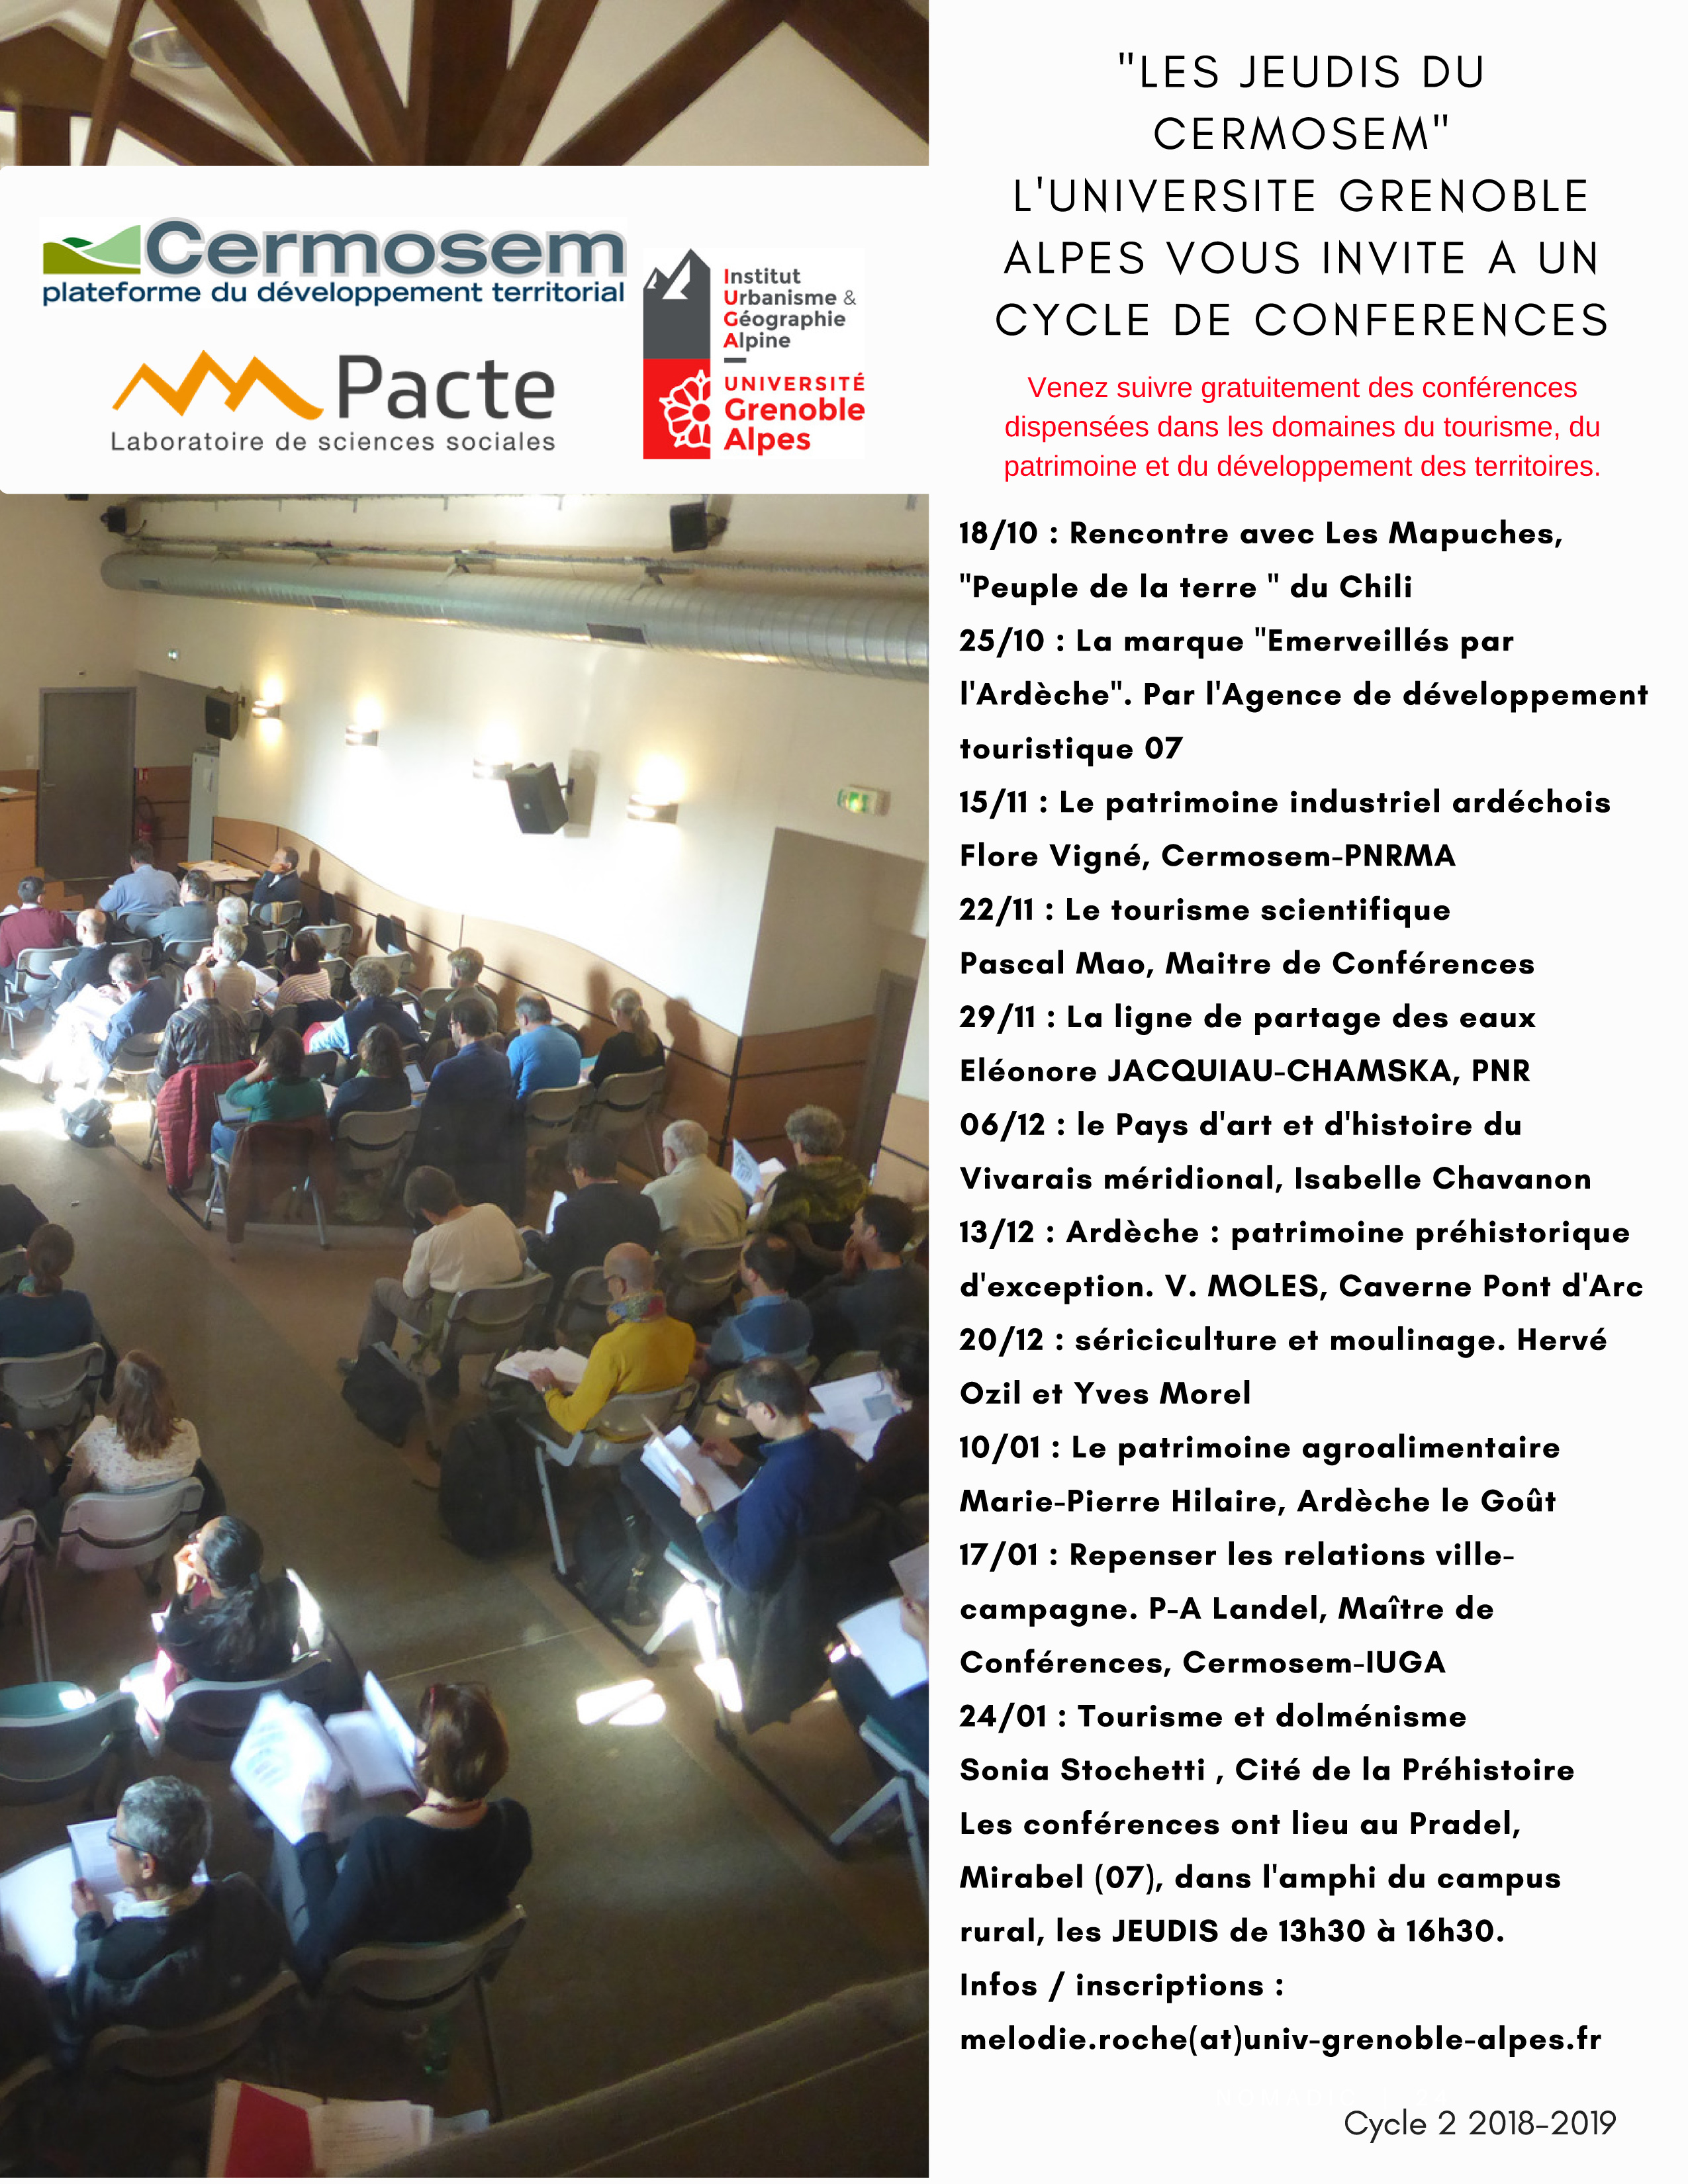 Cycle de conférence du CERMOSEM au Pradel (Mirabel)